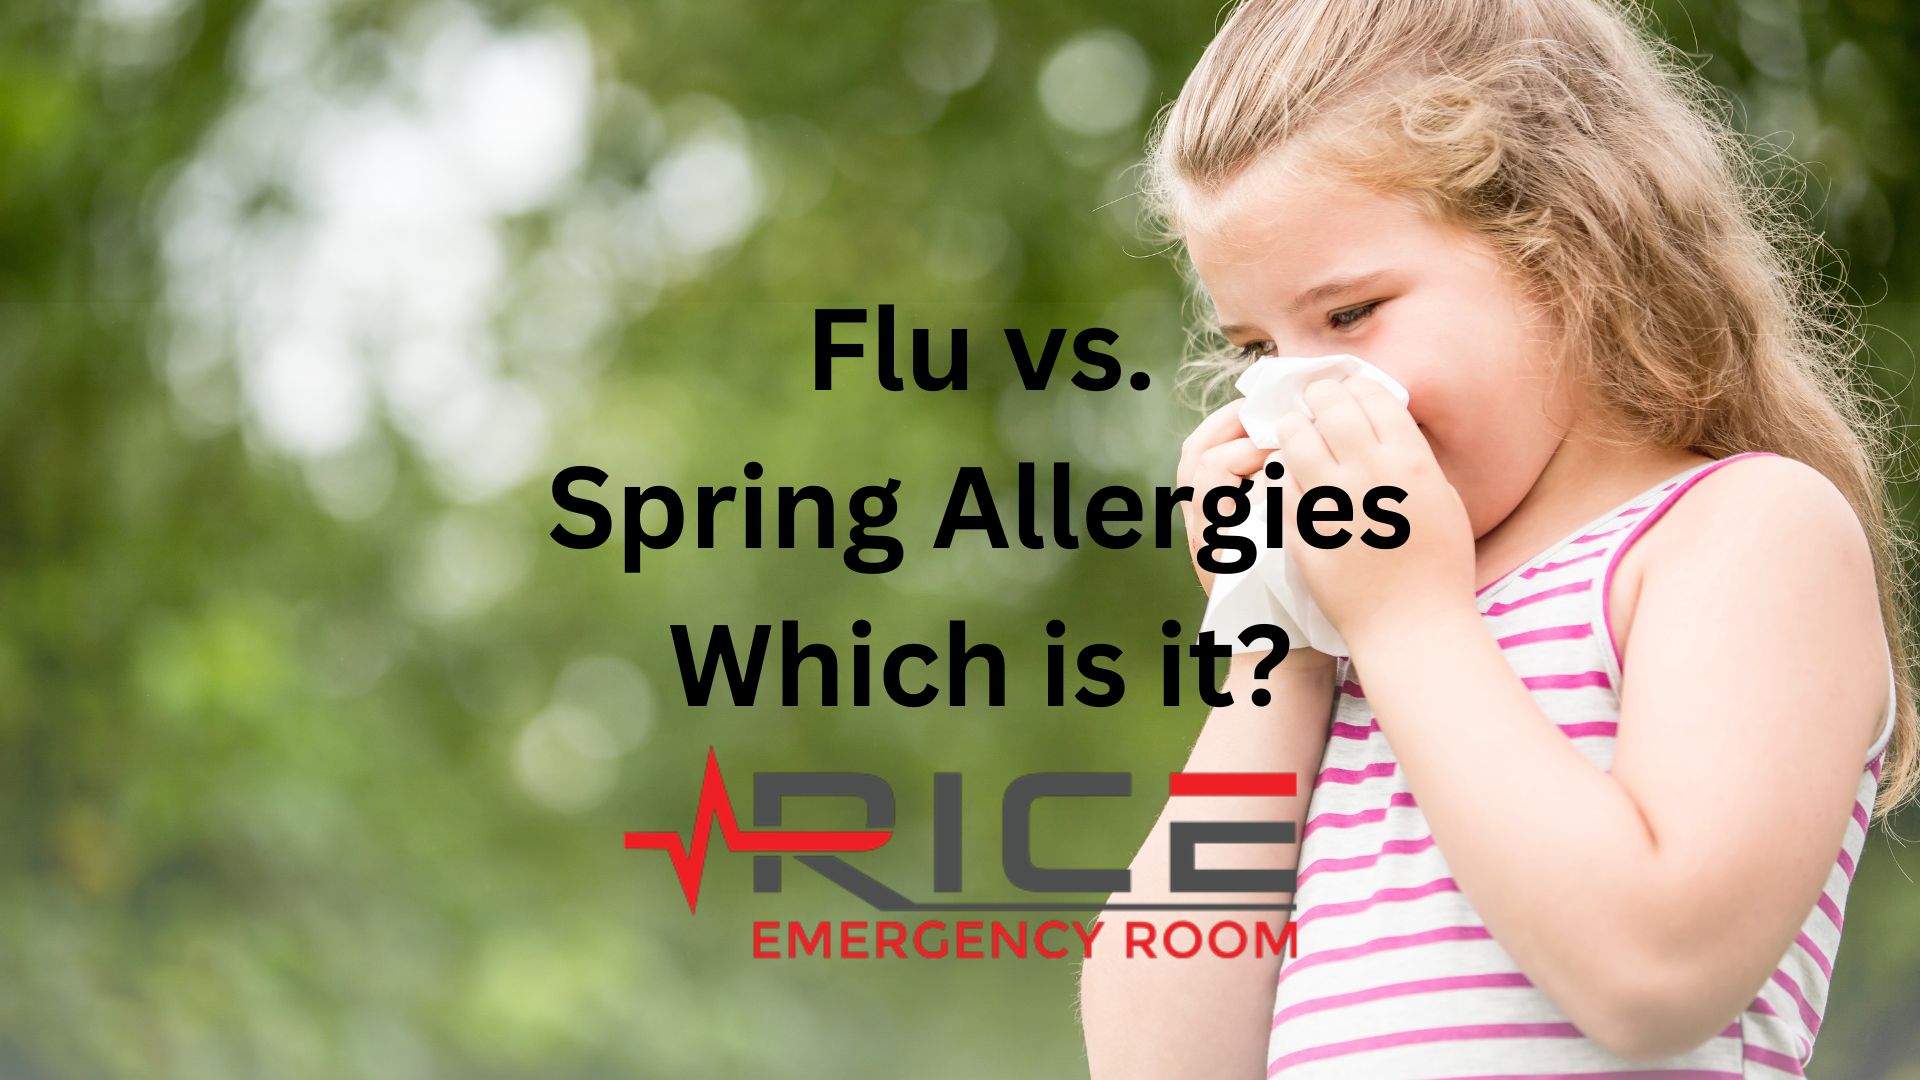 Flu or spring allergies